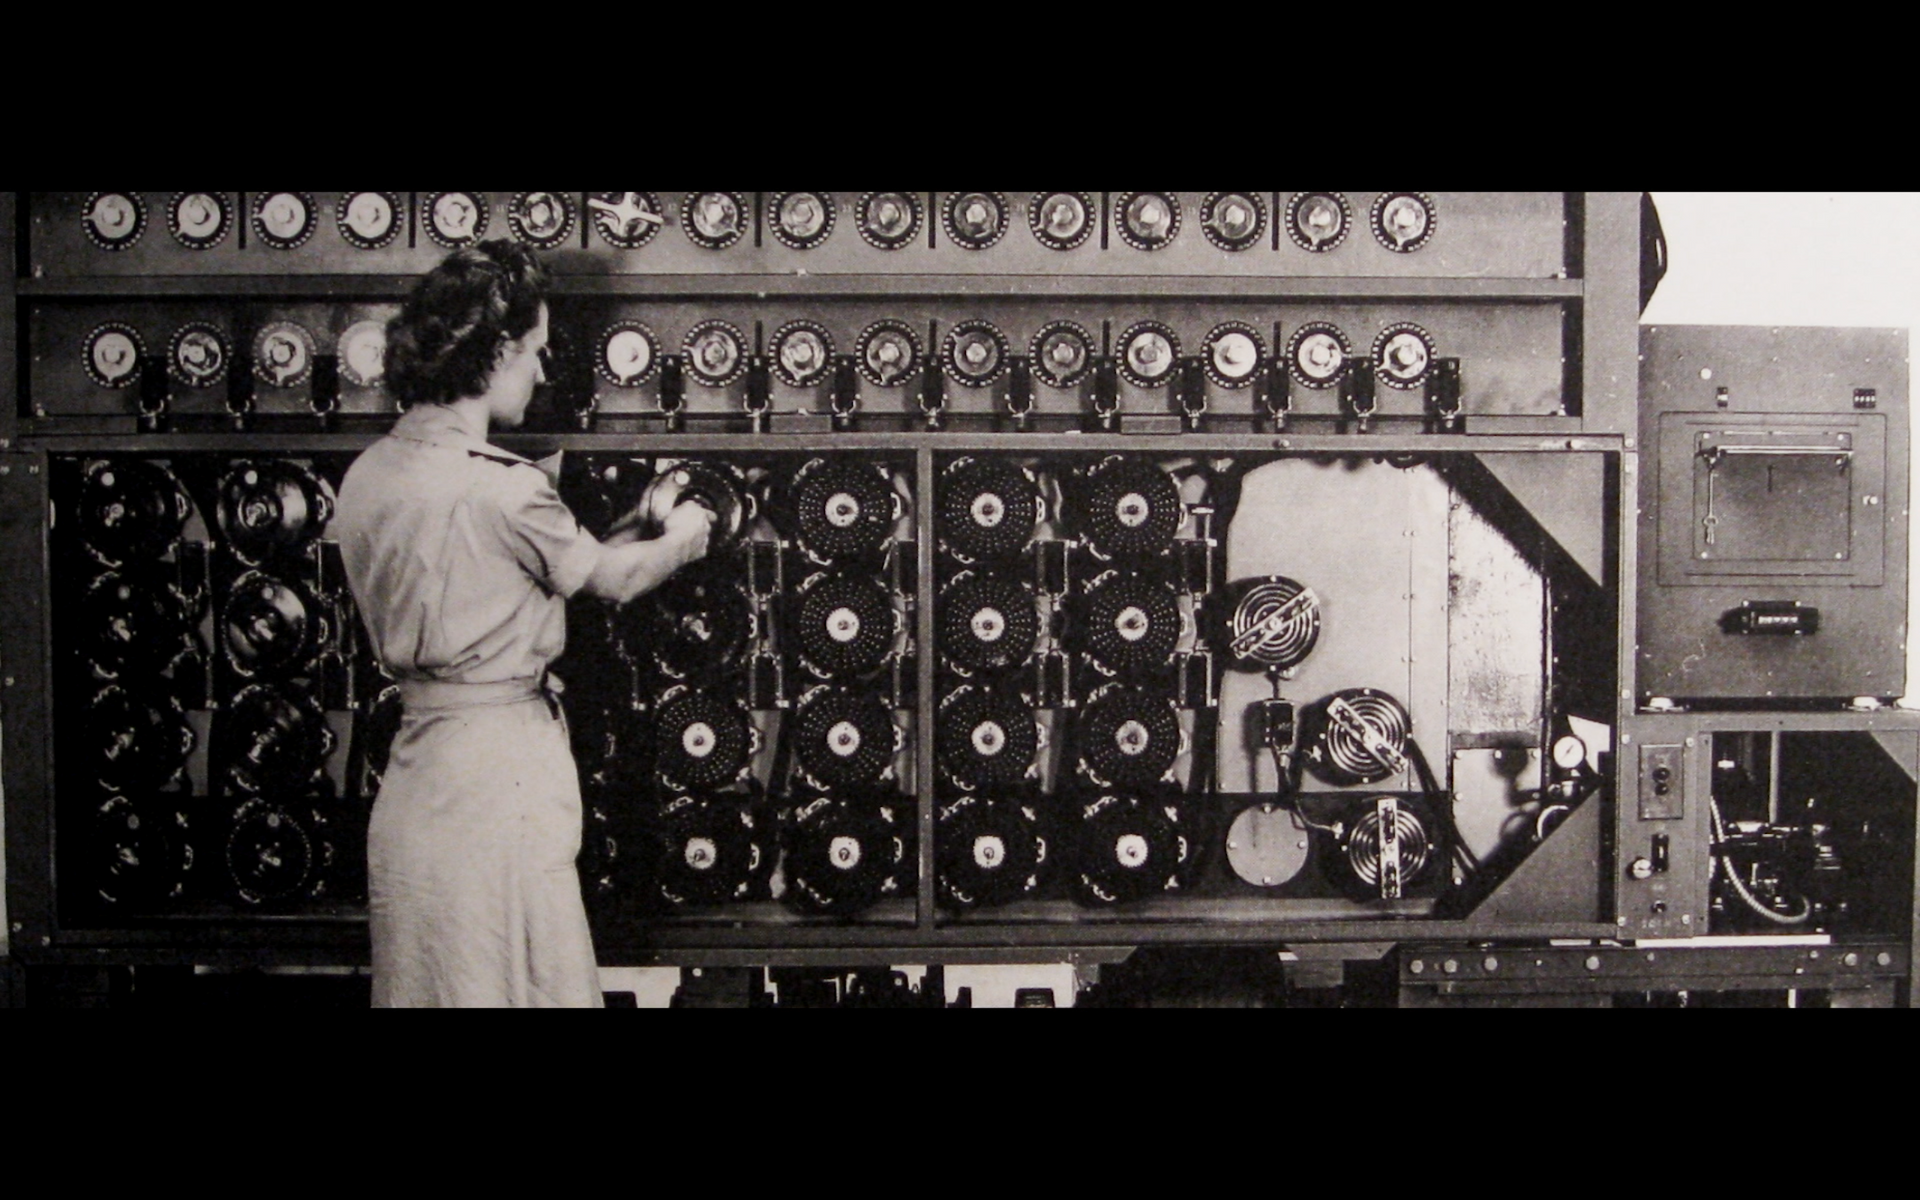 Fragmento de la película documental 'Equipo D: Los códigos olvidados' - Sputnik Mundo, 1920, 01.05.2021